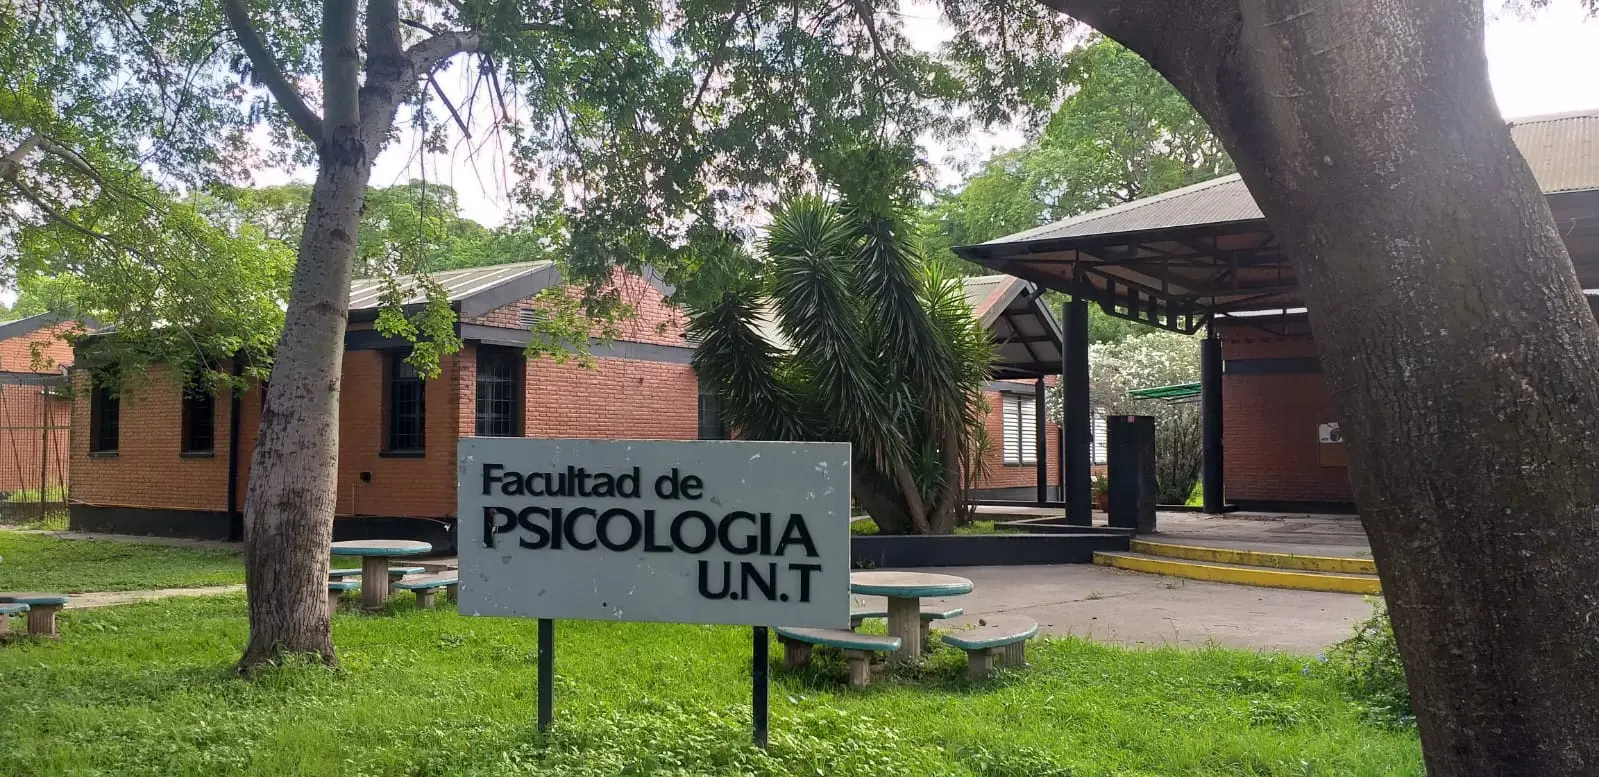 campus psicologia unt - Dónde se estudia Psicología en Tucumán